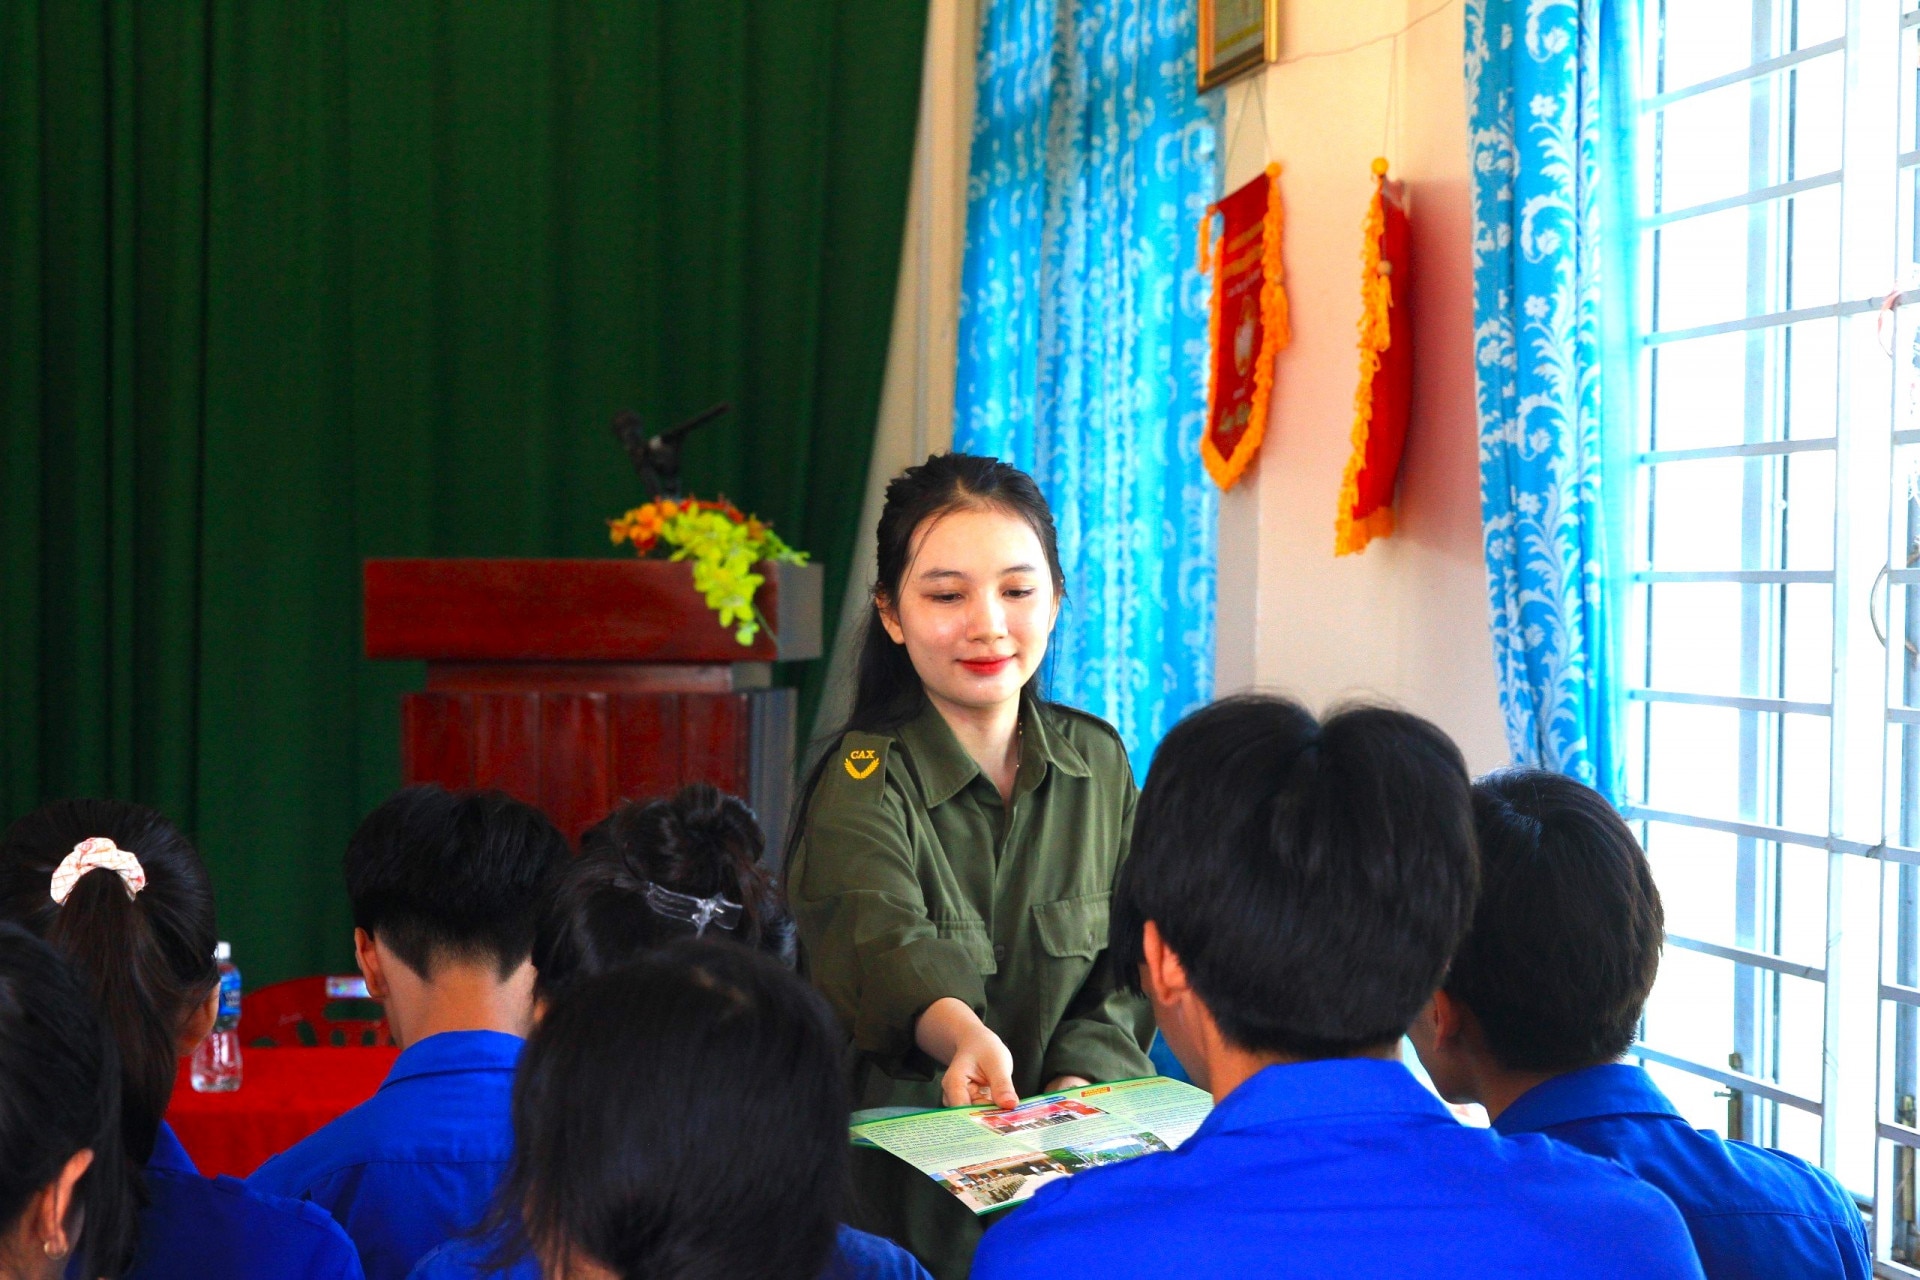  Chị Nguyễn Thị Bích Thùy tham gia tuyên truyền phổ biến giáo dục pháp luật cho các đoàn viên thanh niên trên địa bàn.